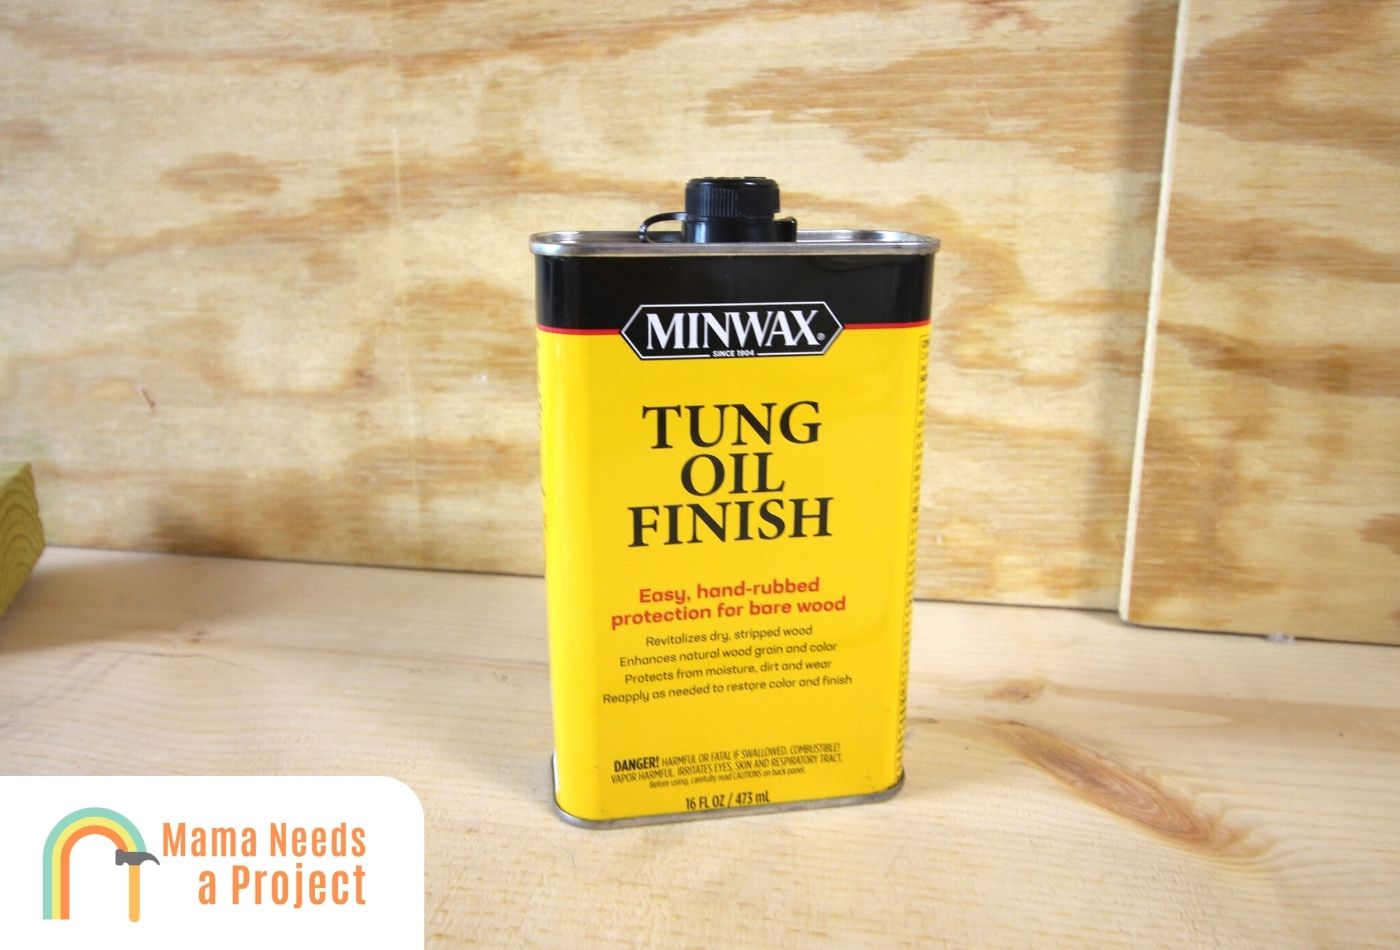 Minwax 67500000 Tung Oil Finish, quart